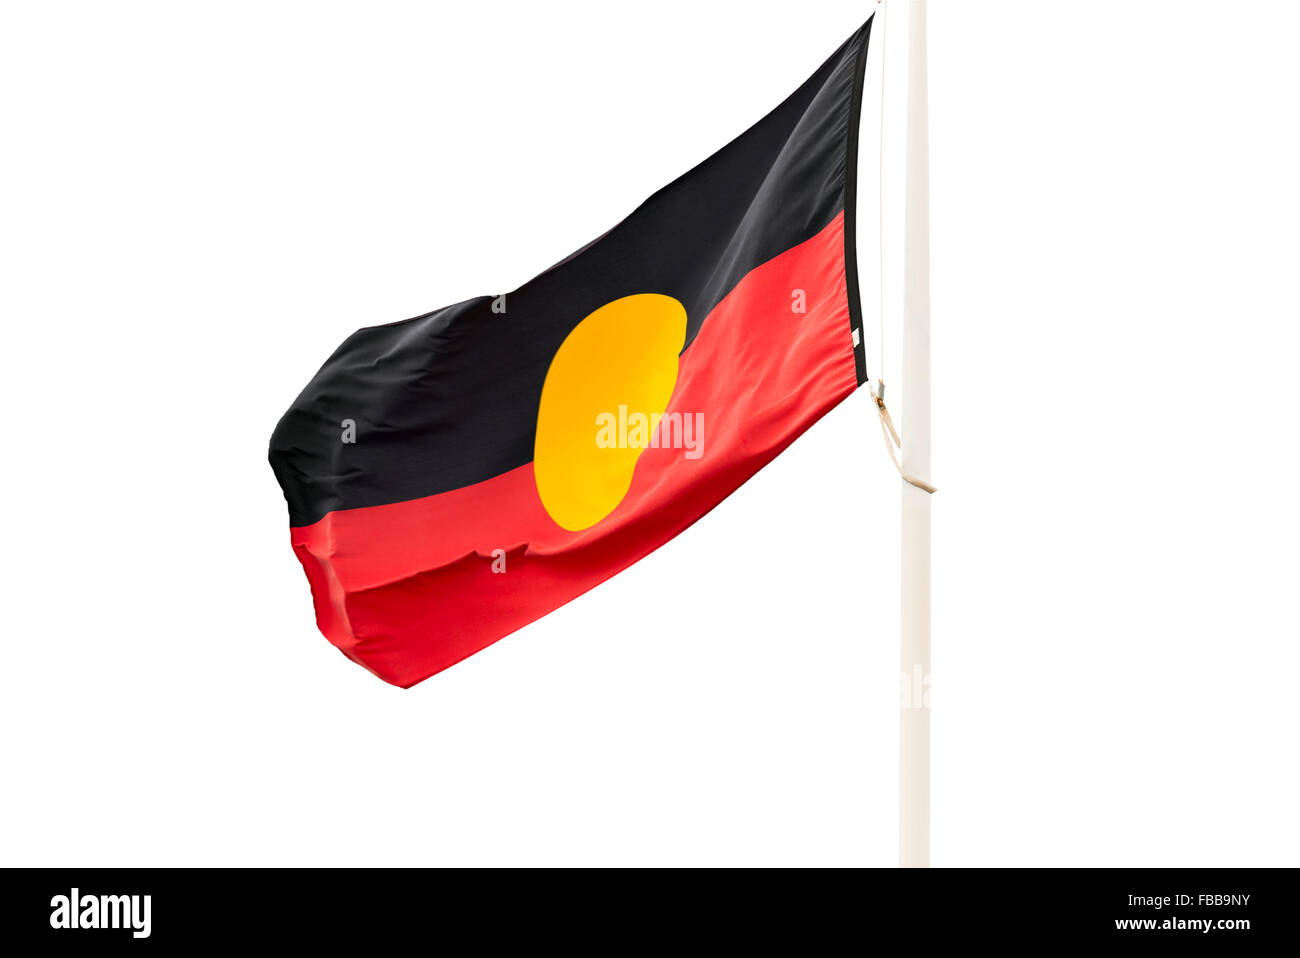 En agitant le drapeau Aborigène sur fond blanc Banque D'Images